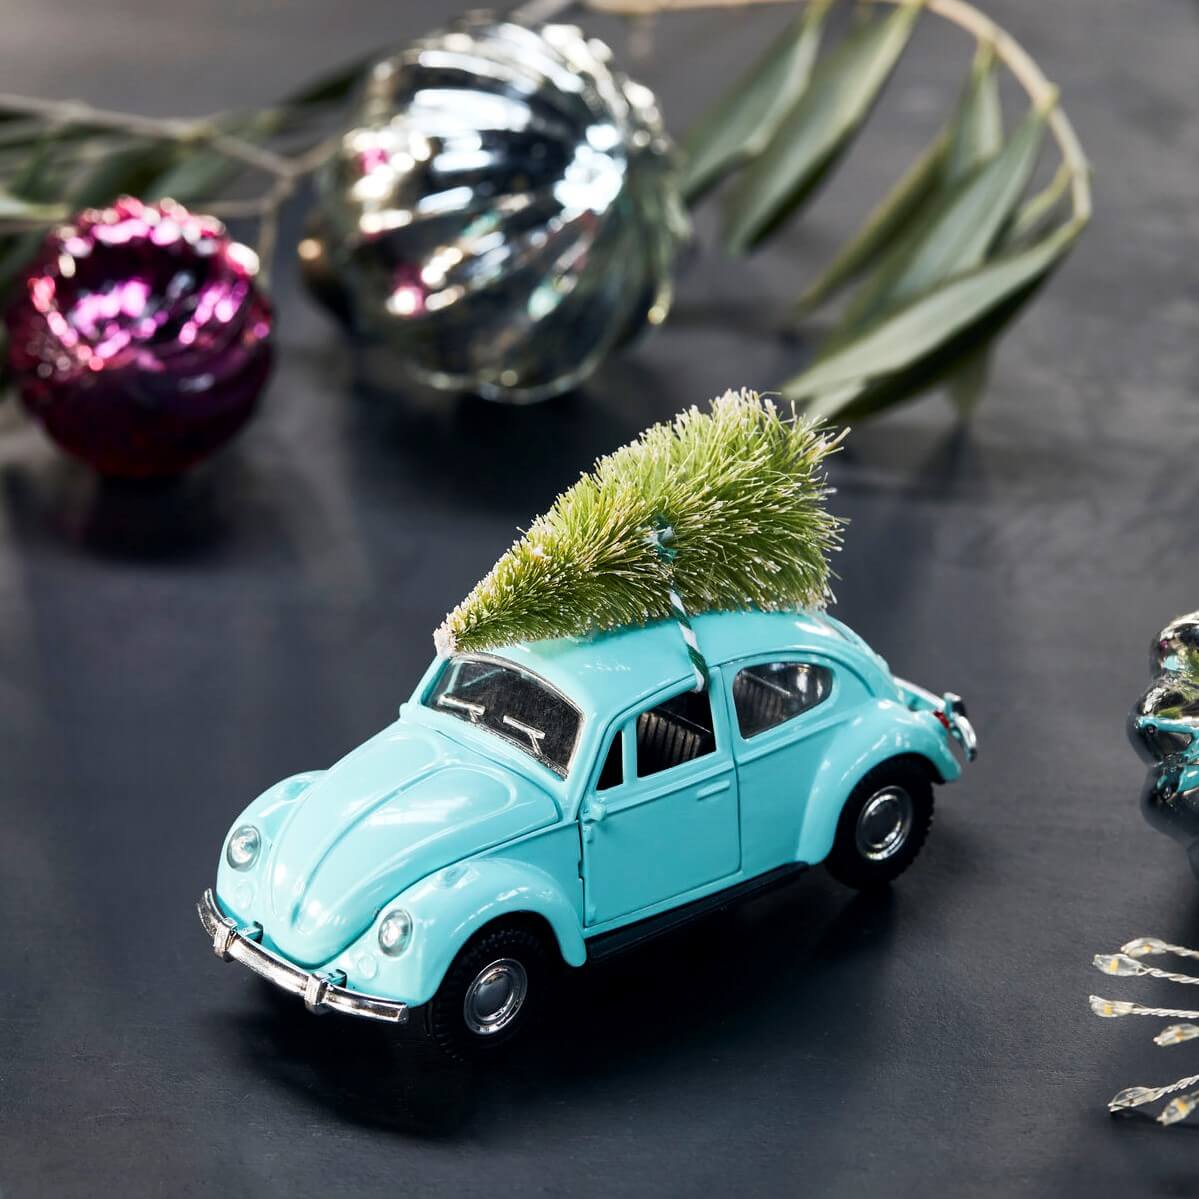 House Doctors xmas car har blivit en populär julklassiker. En vacker julbil som är så cool. En klassisk prydnad med en modern twist tack vare den blå färgen. Bilen är tänkt att illustrera glädjen och 